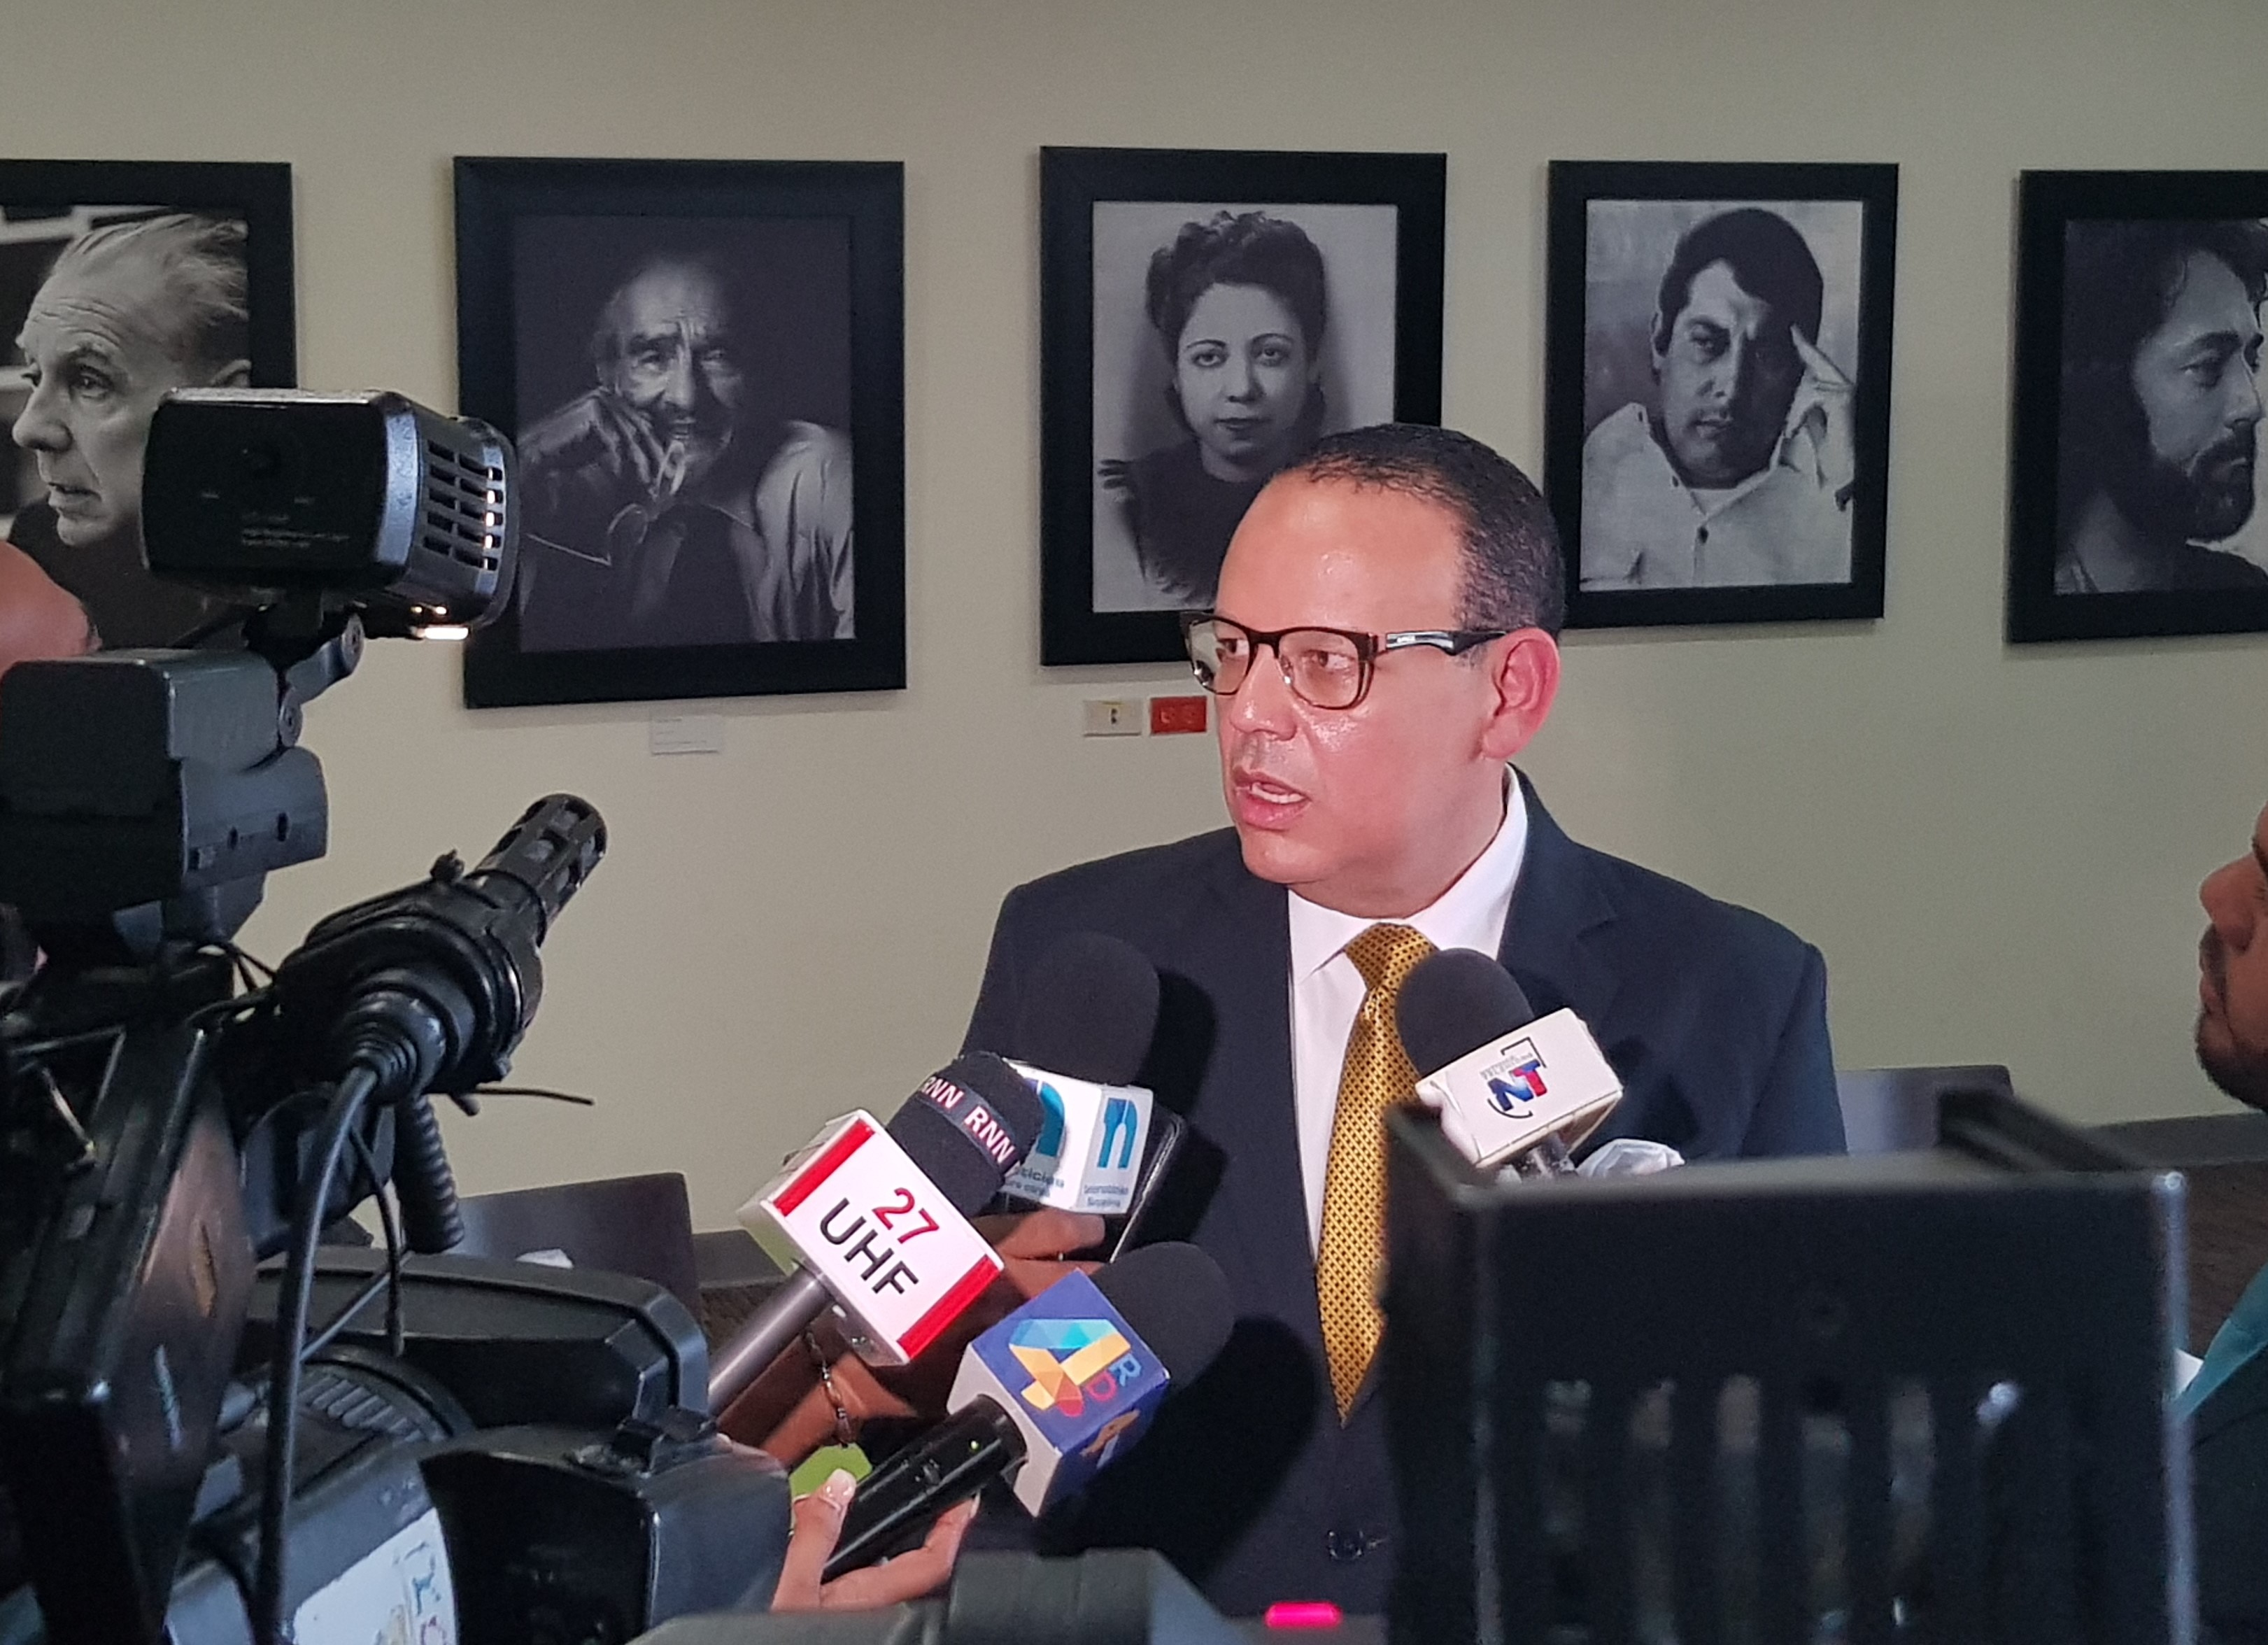  FJT celebrará panel de expertos sobre el contexto legal y constitucional dominicano de las primaria abiertas y cerradas